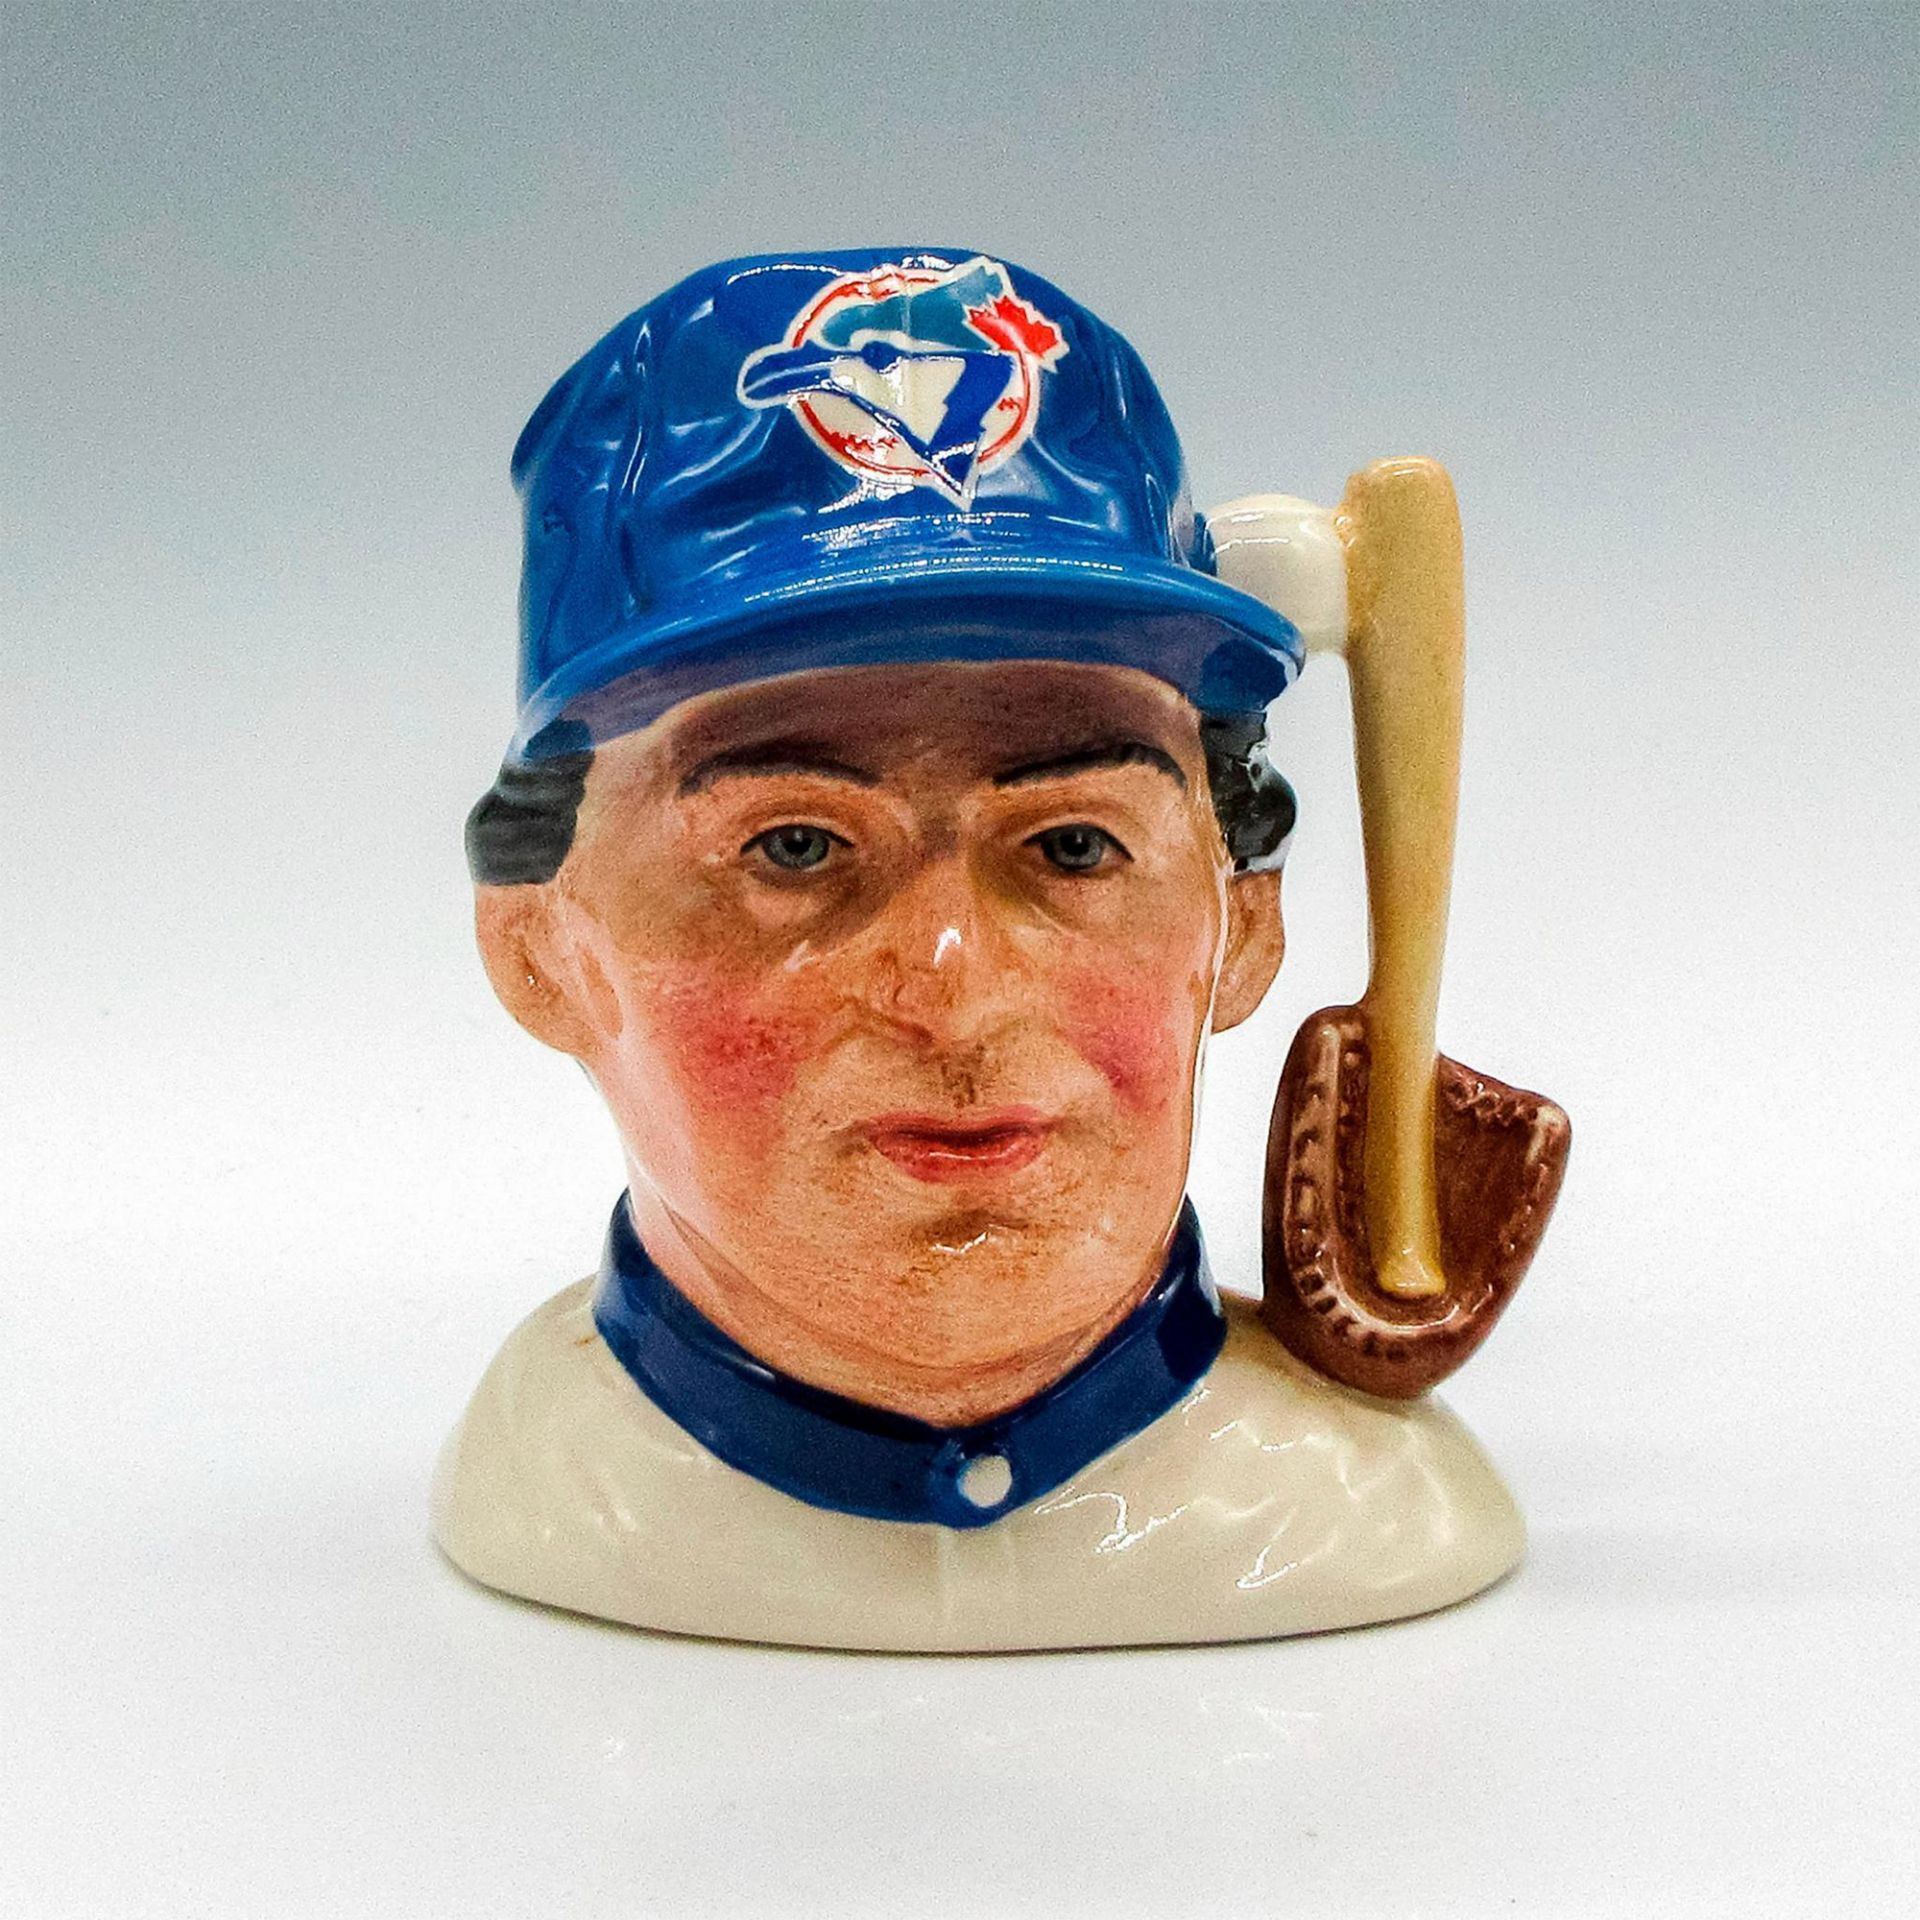 Baseball Player D6973 (Toronto Blue Jays) - Small - Royal Doulton Character Jug